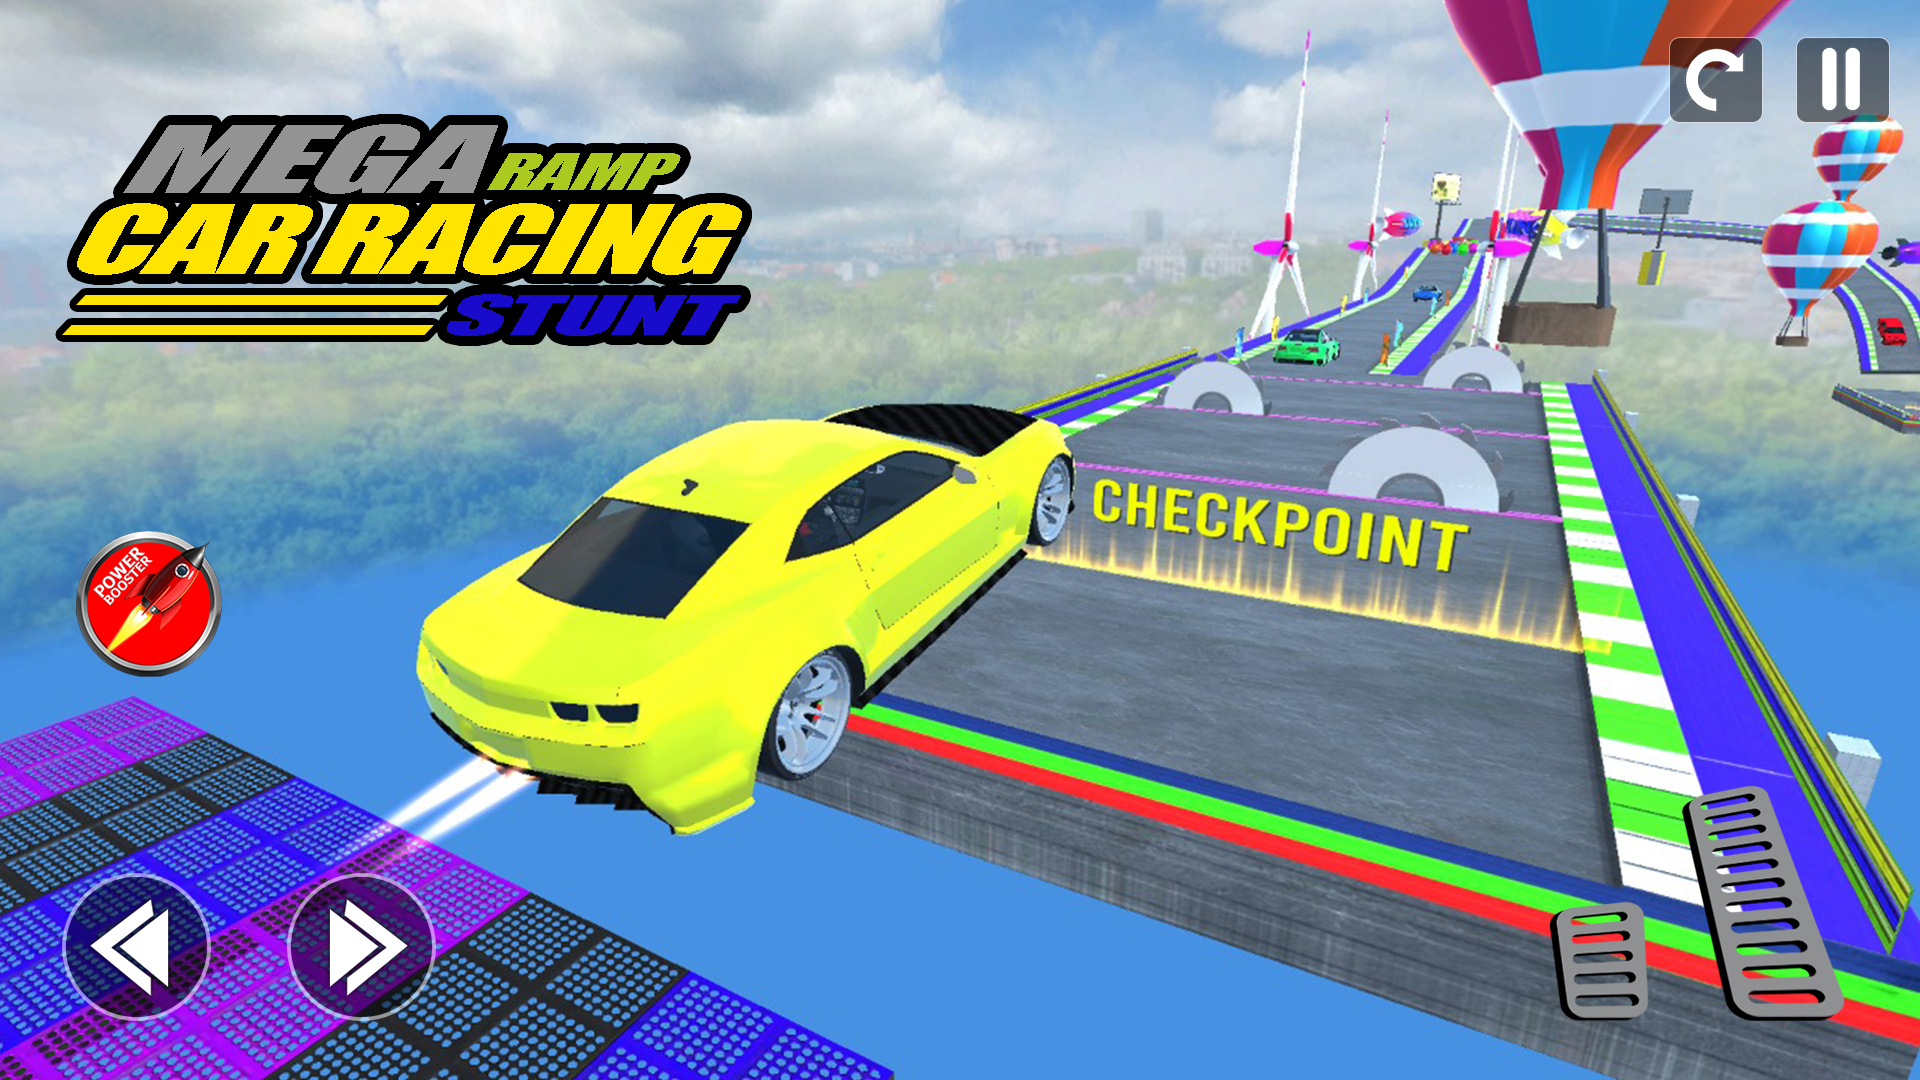 GT Mega Ramp Car Stunt Games: Car Games, Mega Ramp Car Racing